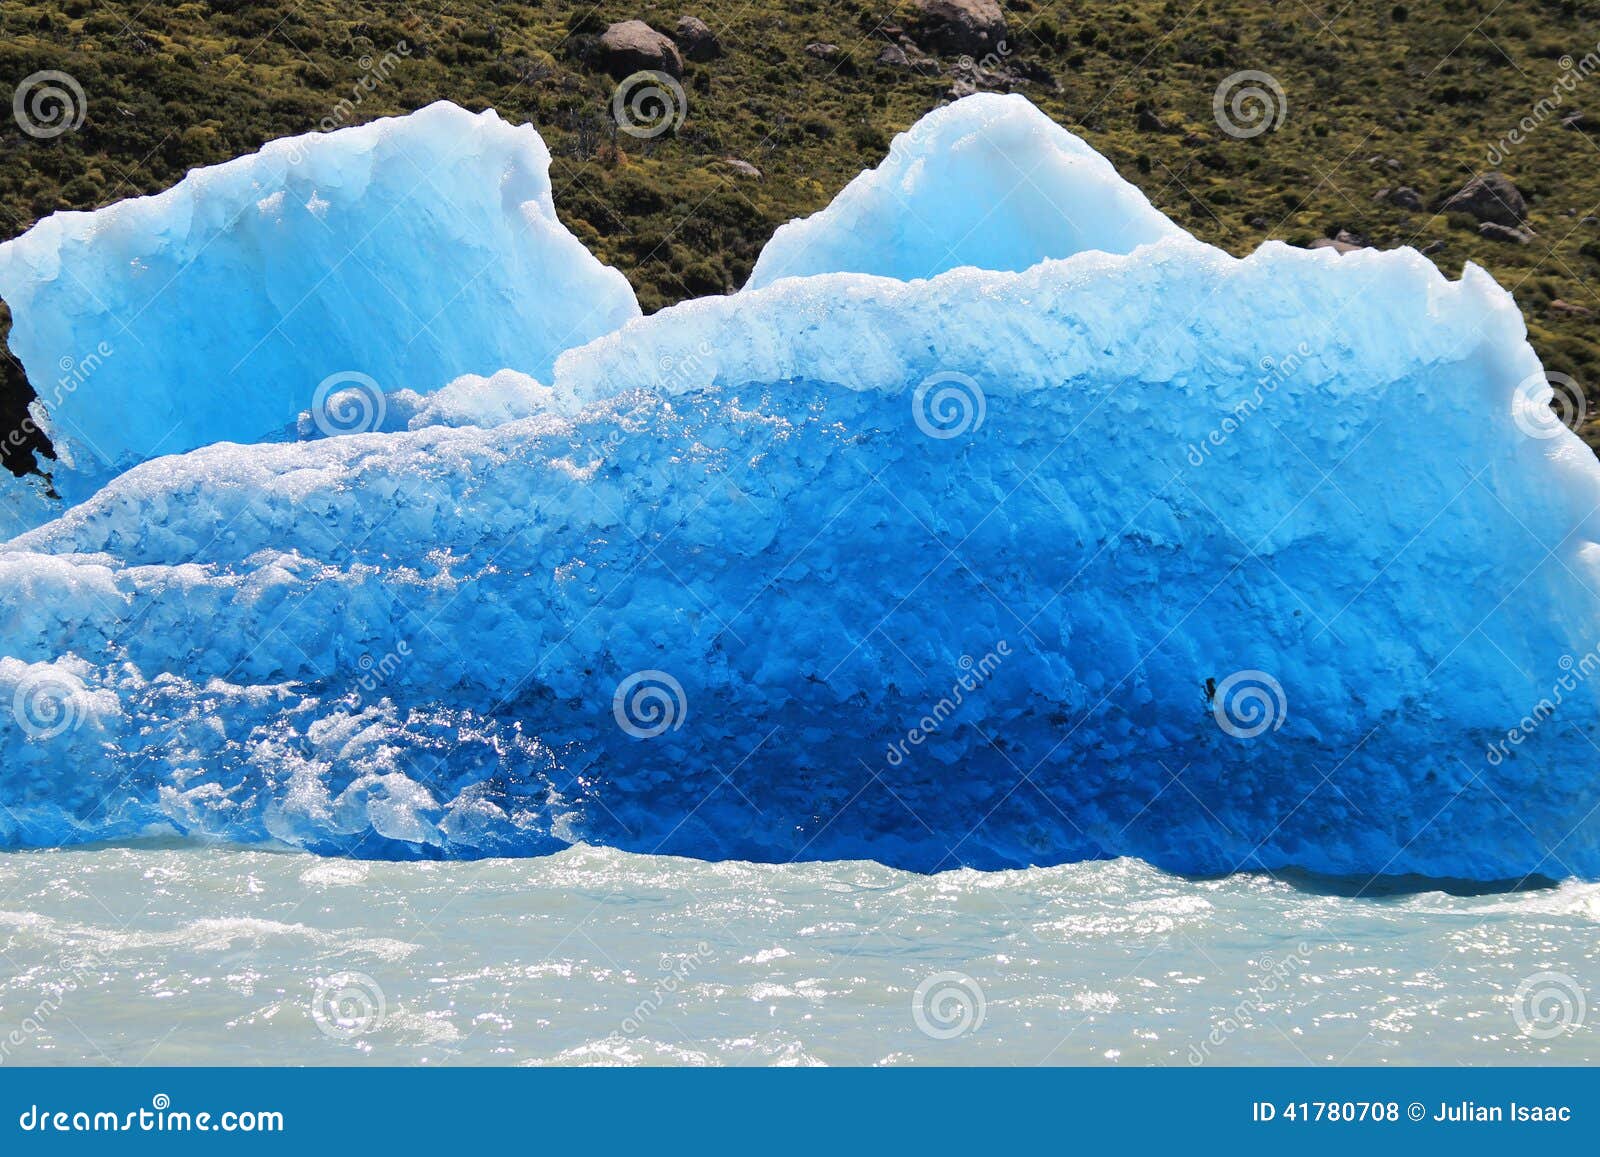 tempanos glaciar viedma